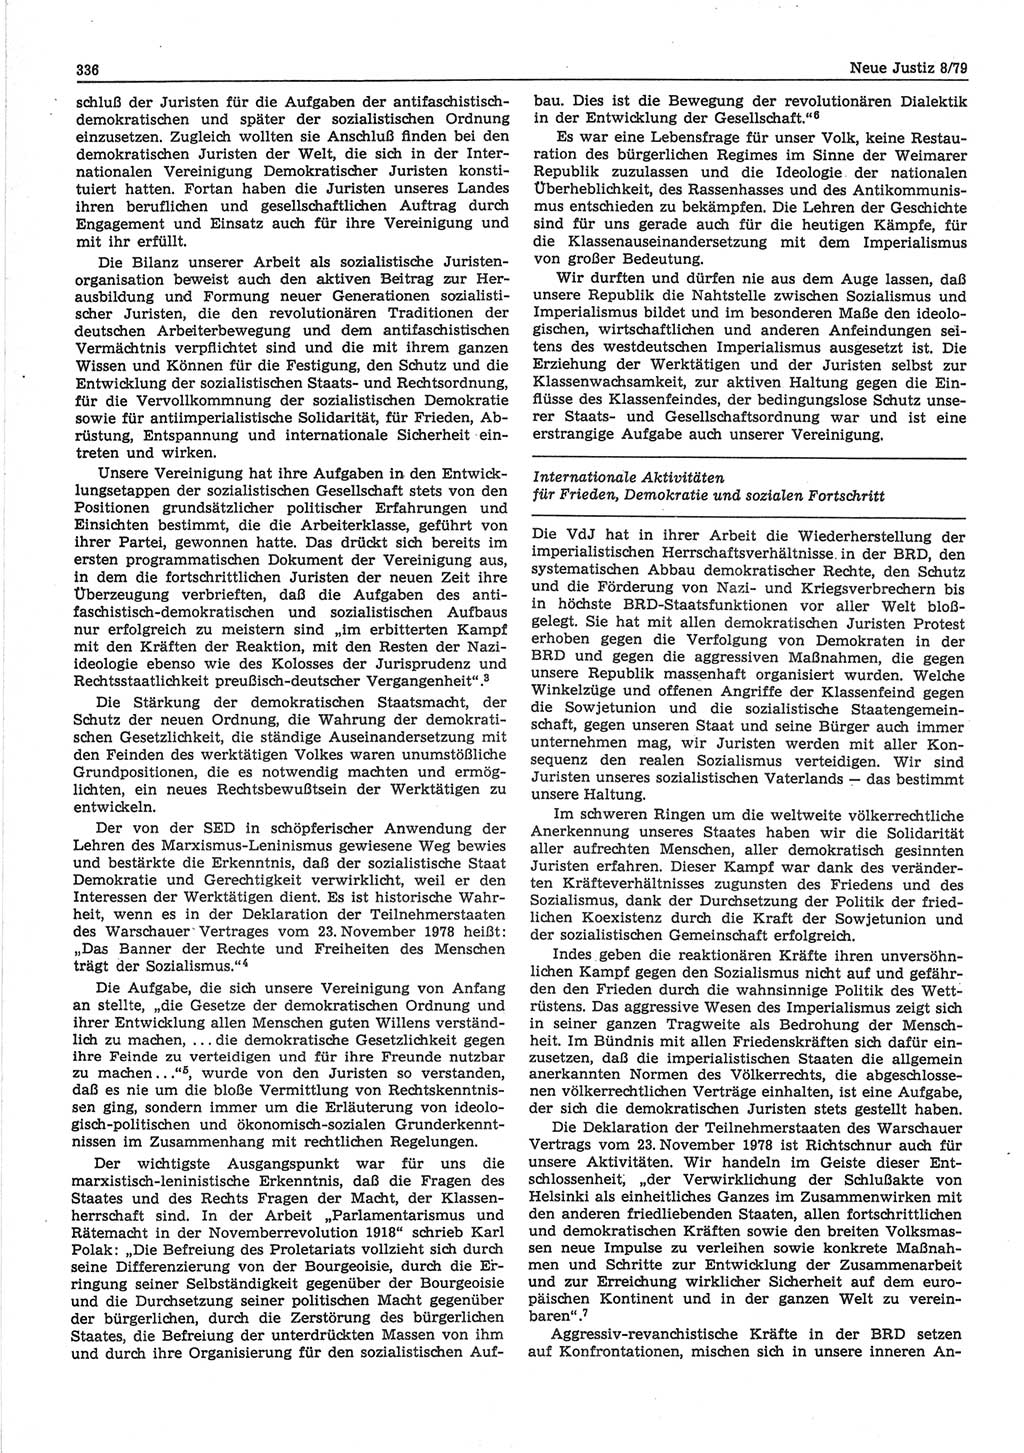 Neue Justiz (NJ), Zeitschrift für sozialistisches Recht und Gesetzlichkeit [Deutsche Demokratische Republik (DDR)], 33. Jahrgang 1979, Seite 336 (NJ DDR 1979, S. 336)